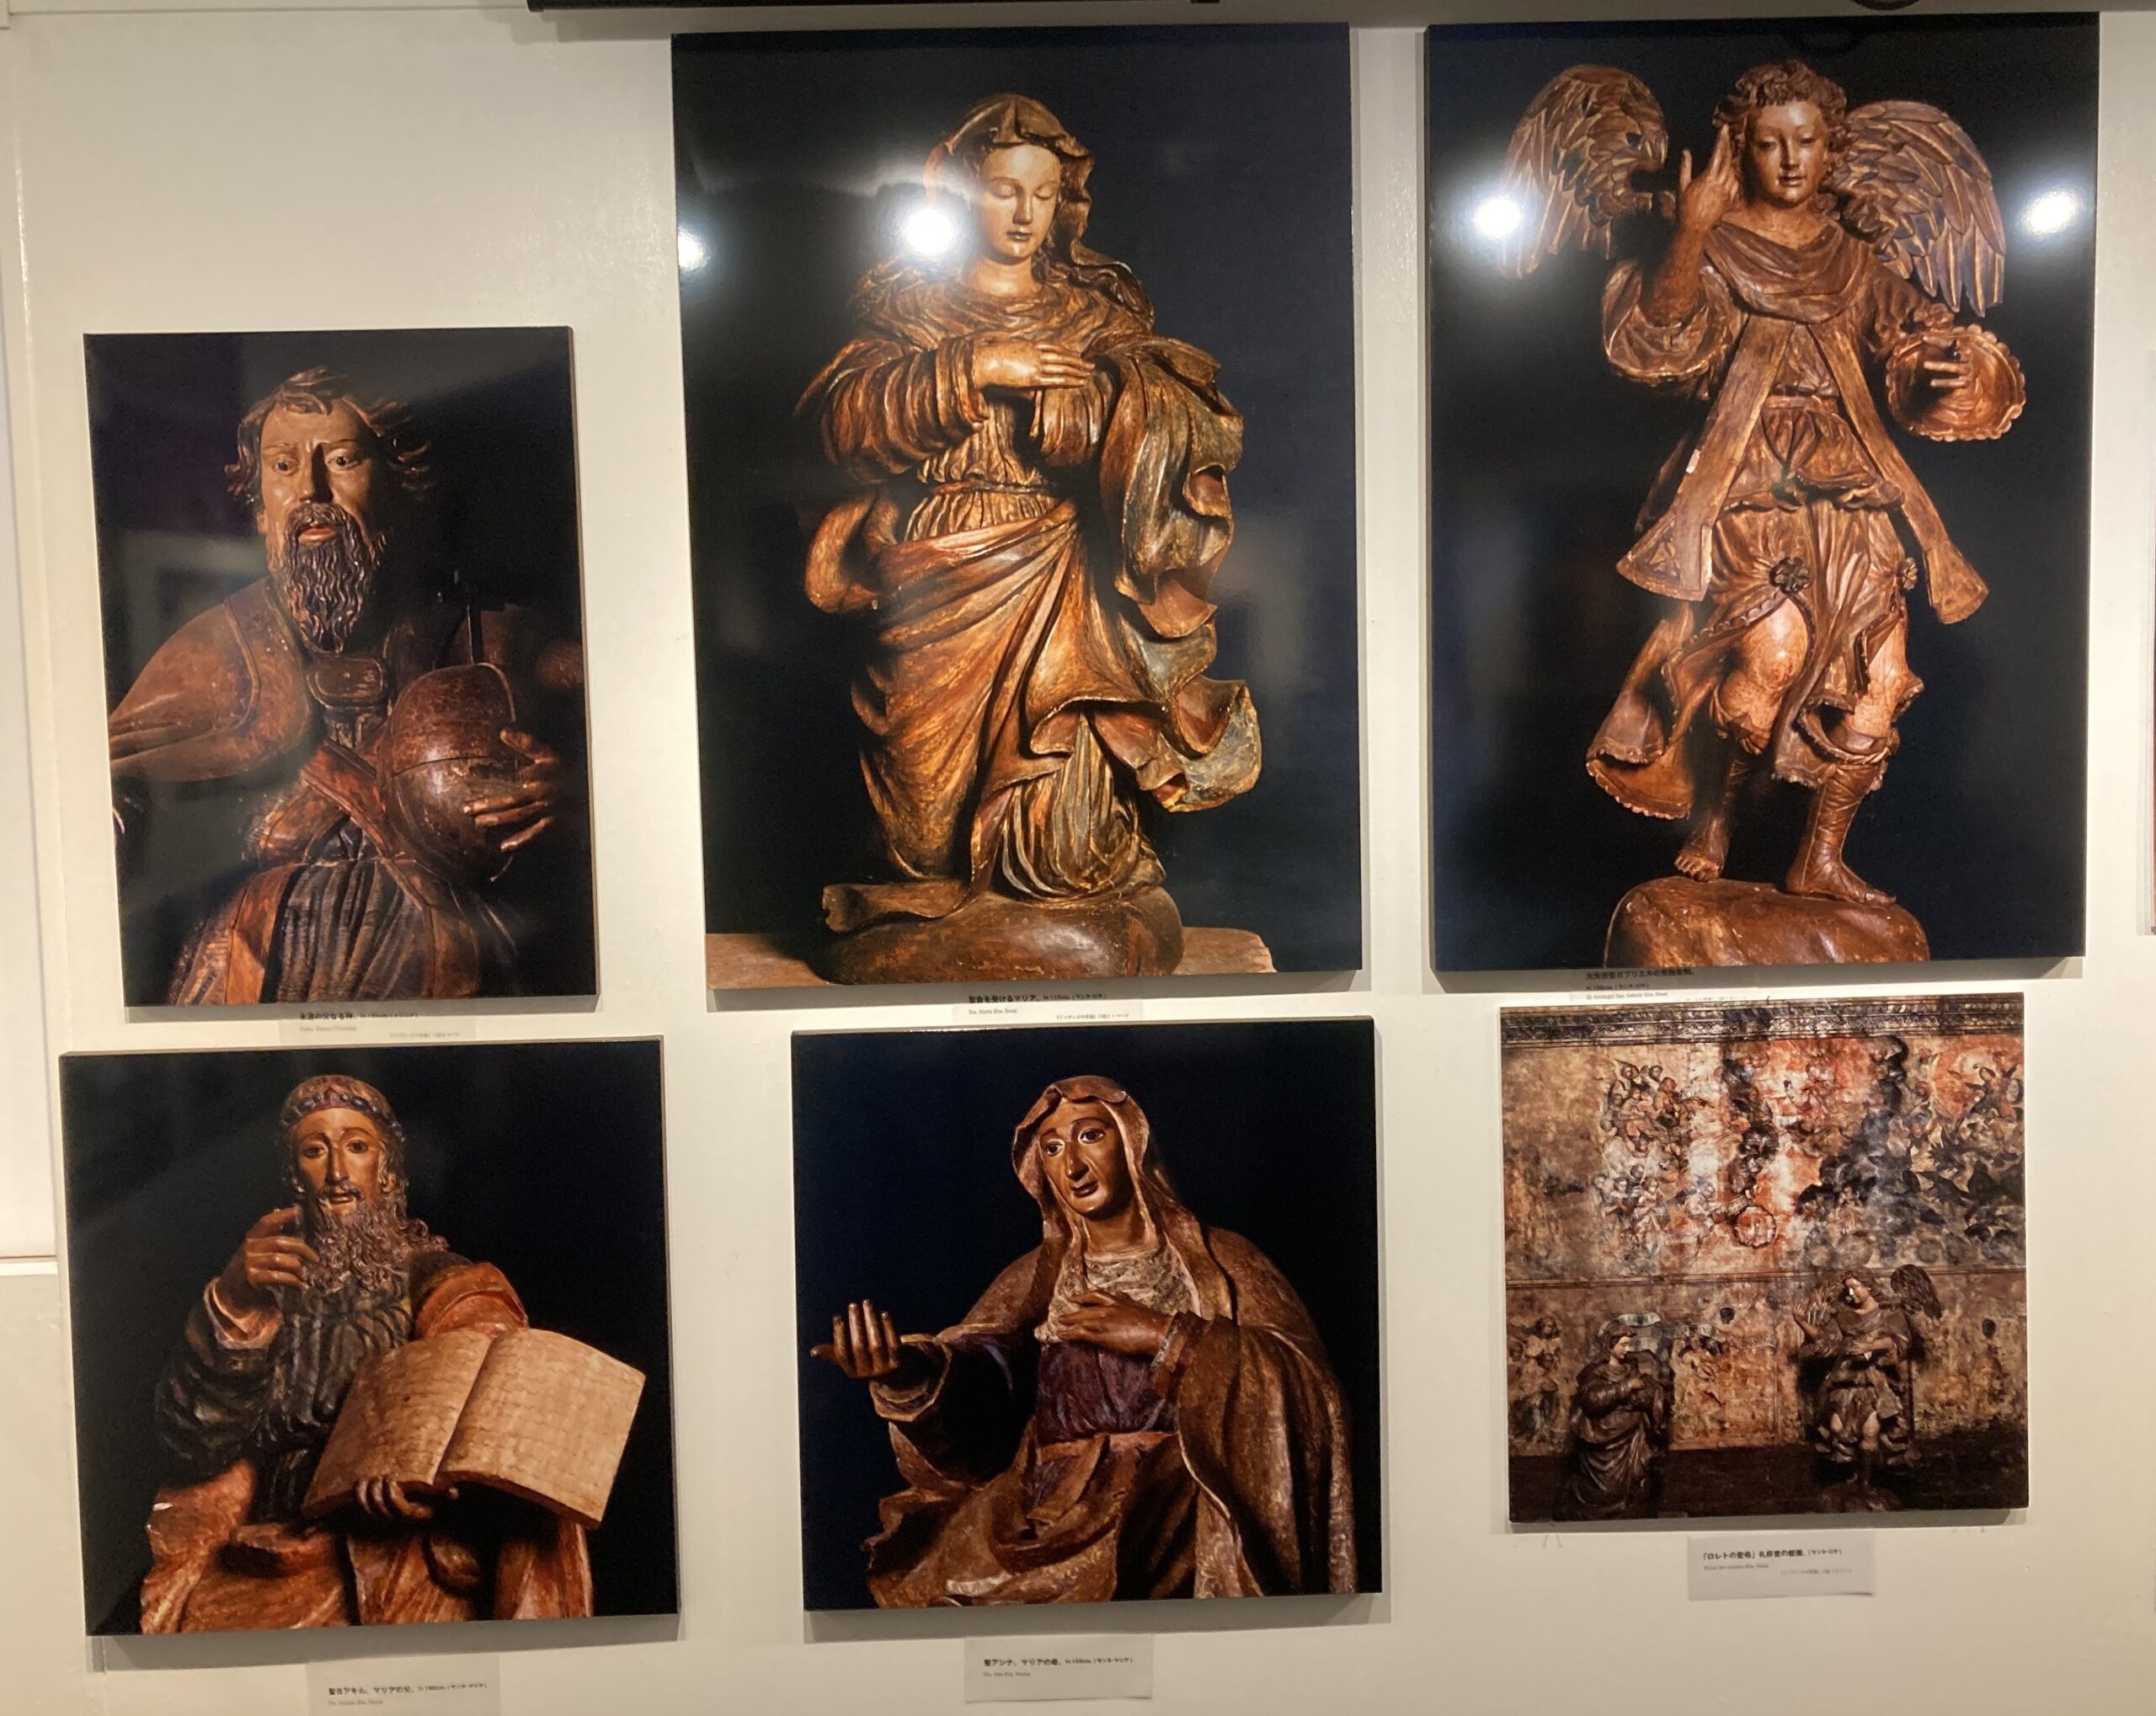 写真展の展示室に飾られたインディオの聖像のパネル写真の数々①